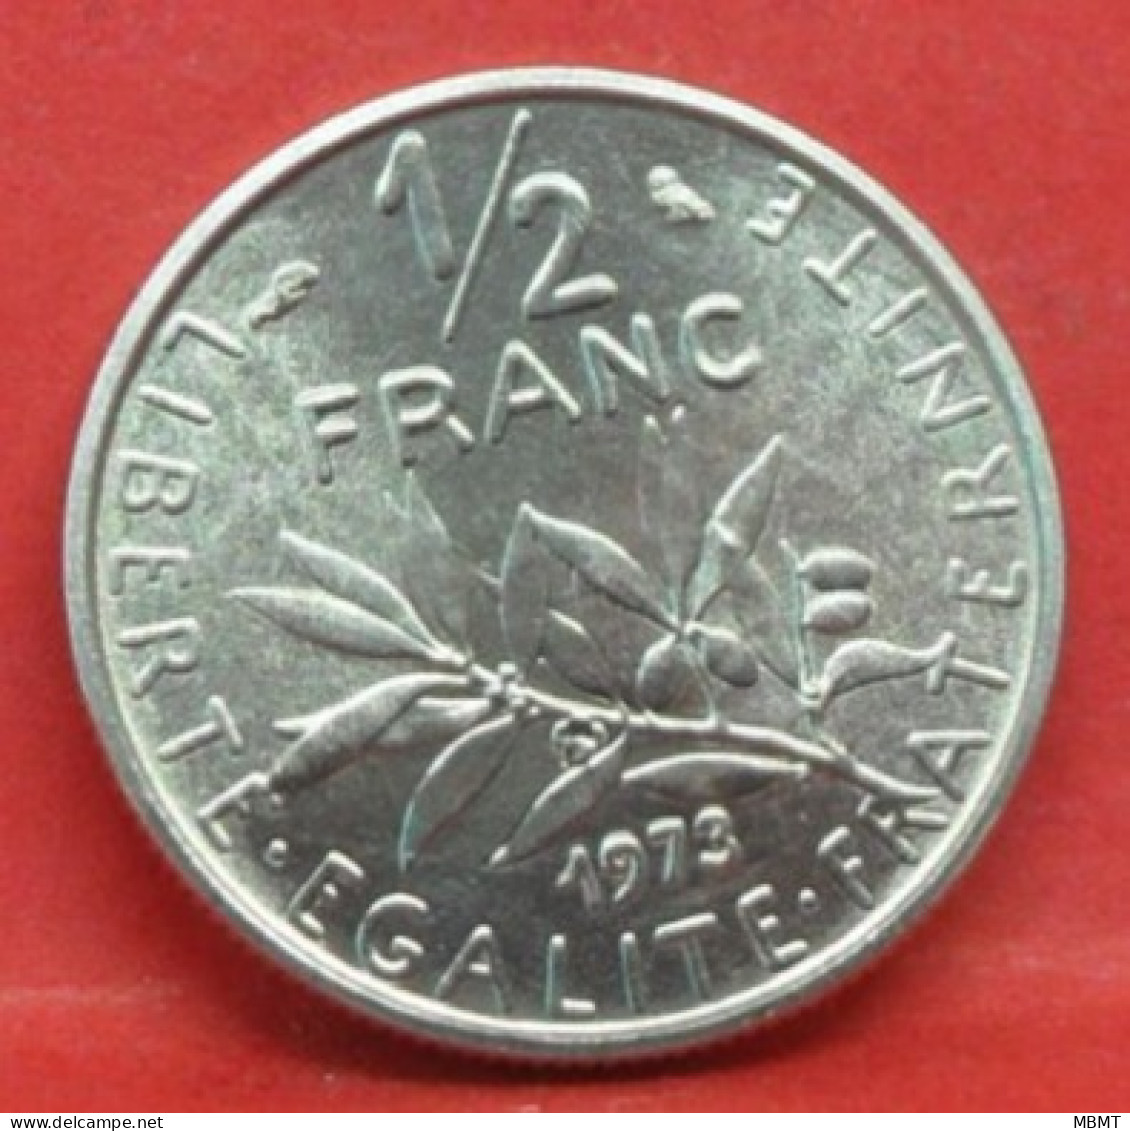 50 Centimes Semeuse 1973 - FDC - Pièce Monnaie France - Article N°1060 - 50 Centimes